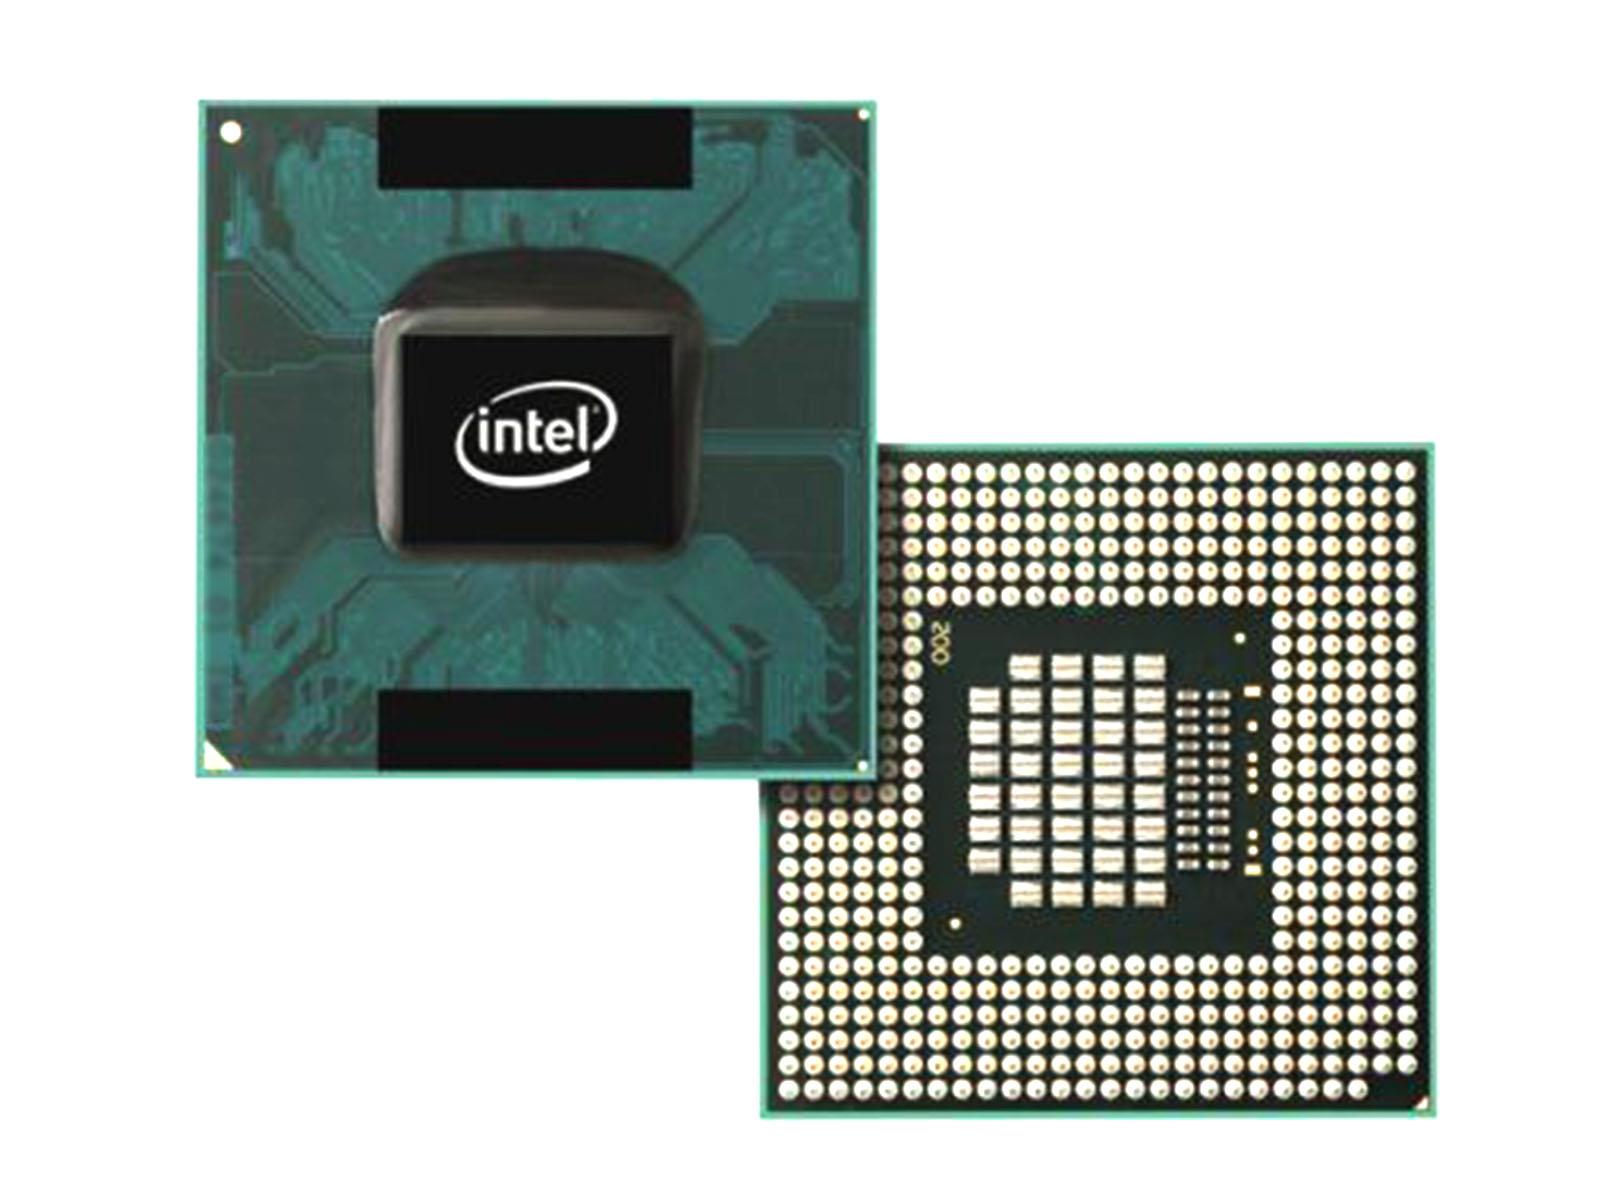 Intel Pentium 4 cpu